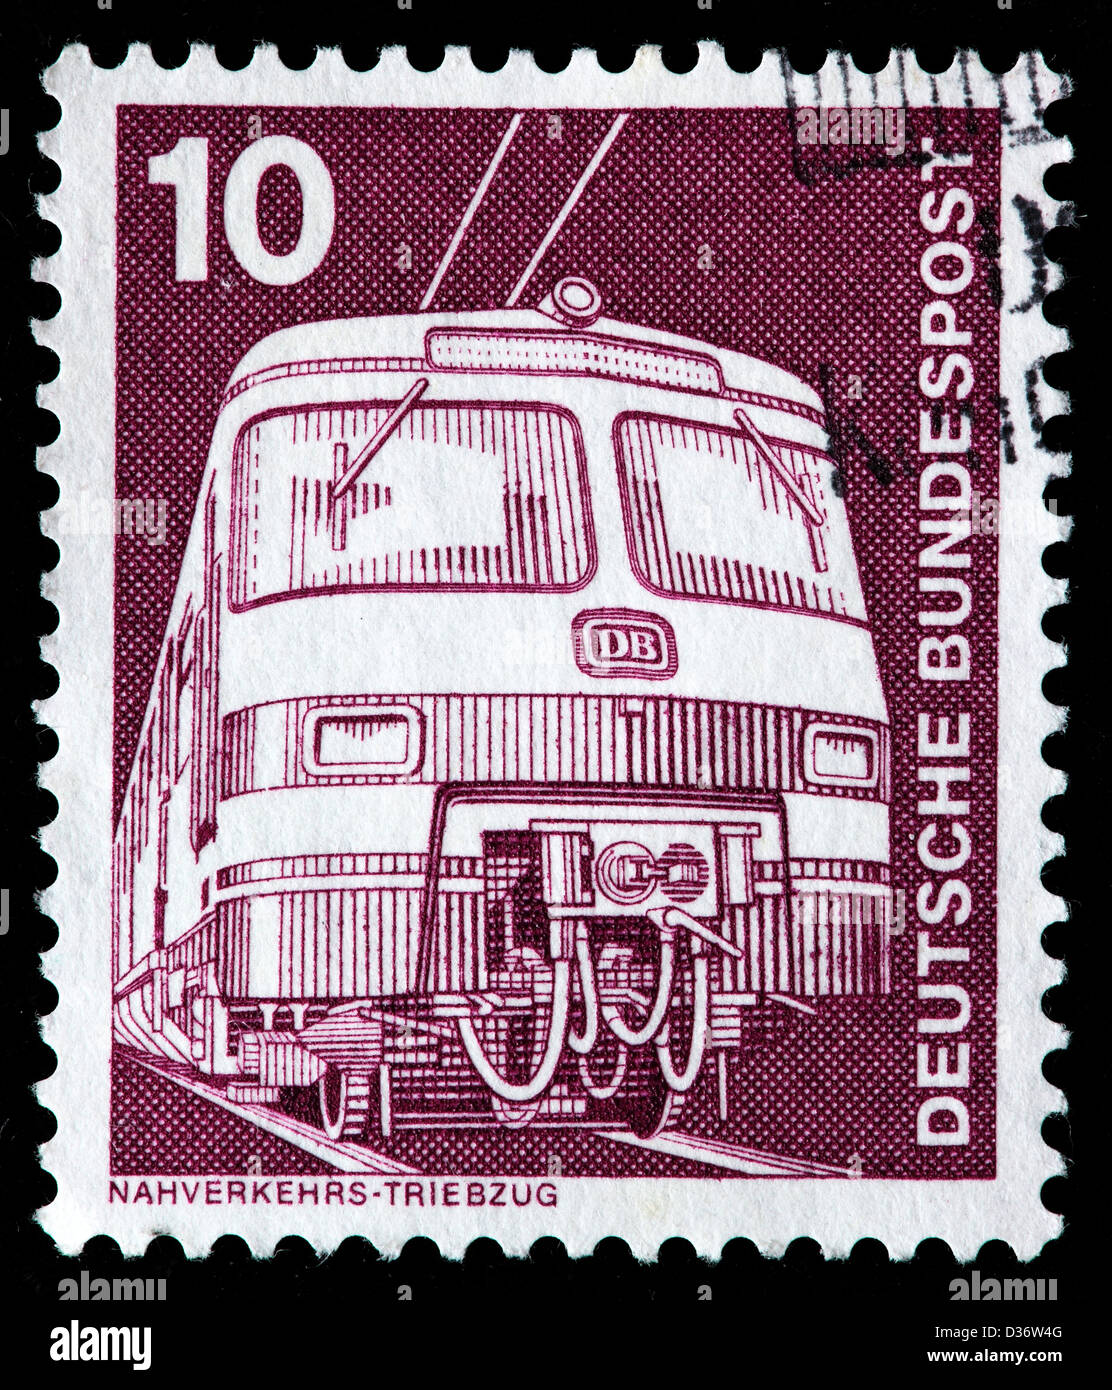 Train électrique, timbre-poste, Allemagne, 1975 Banque D'Images